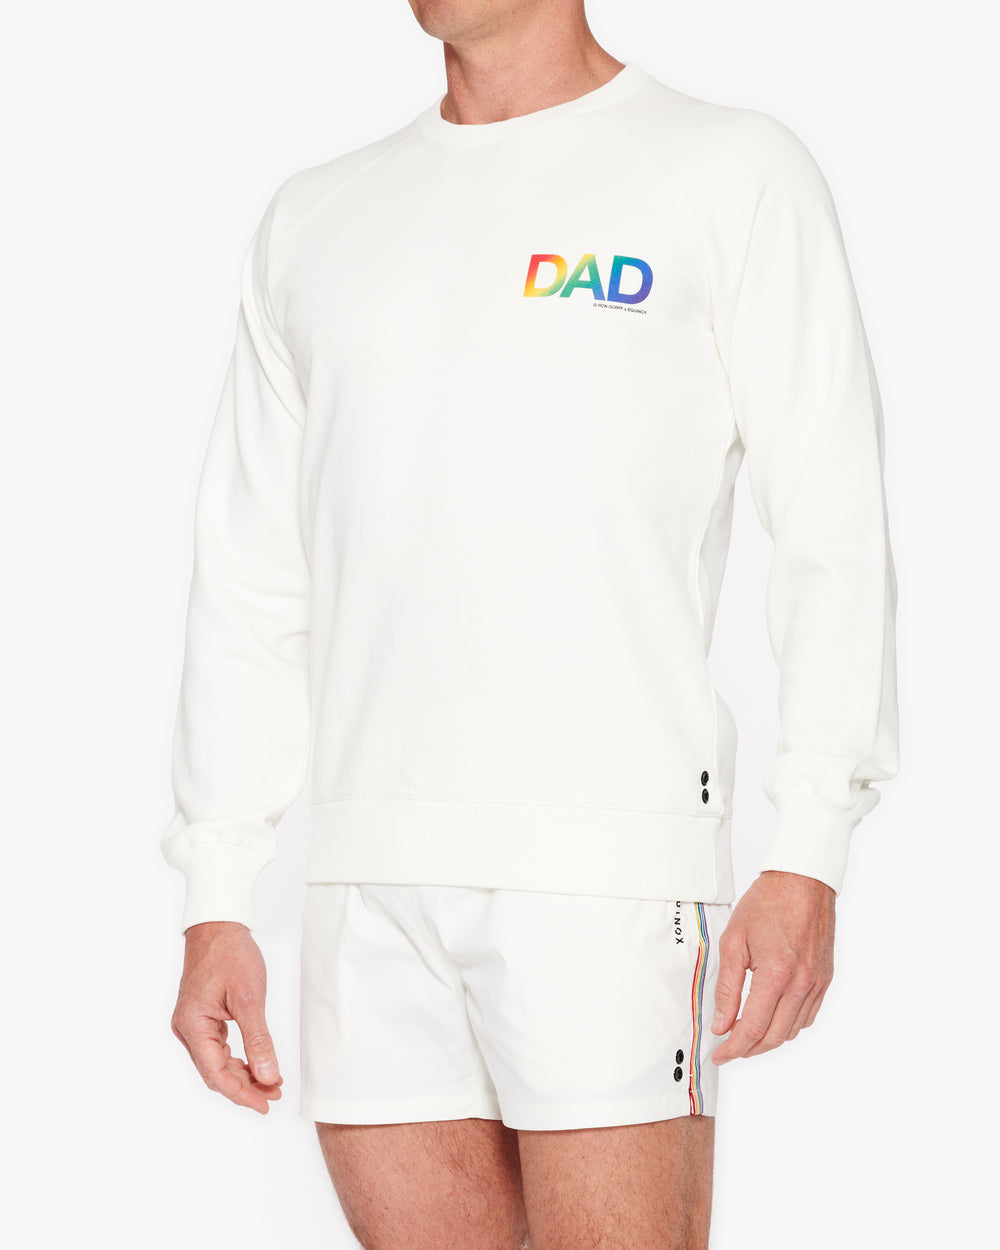 Ron Dorff Equinox Dad Pride Sweatshirt